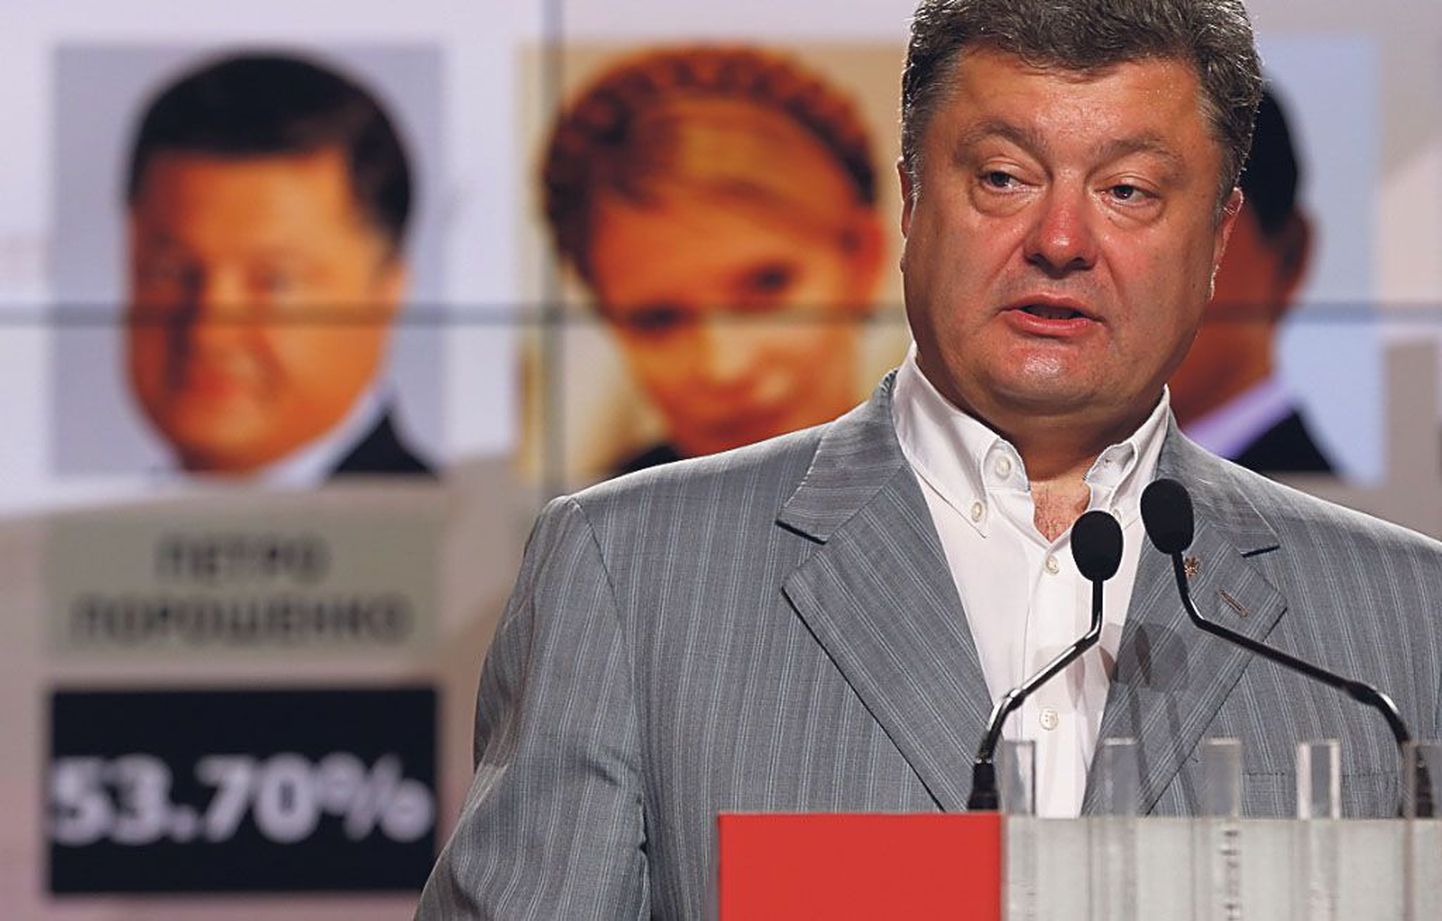 Petro Porošenkol piisas veidi üle 55 protsendist häältest, et esimeses voorus olla valitud Ukraina uueks presidendiks.